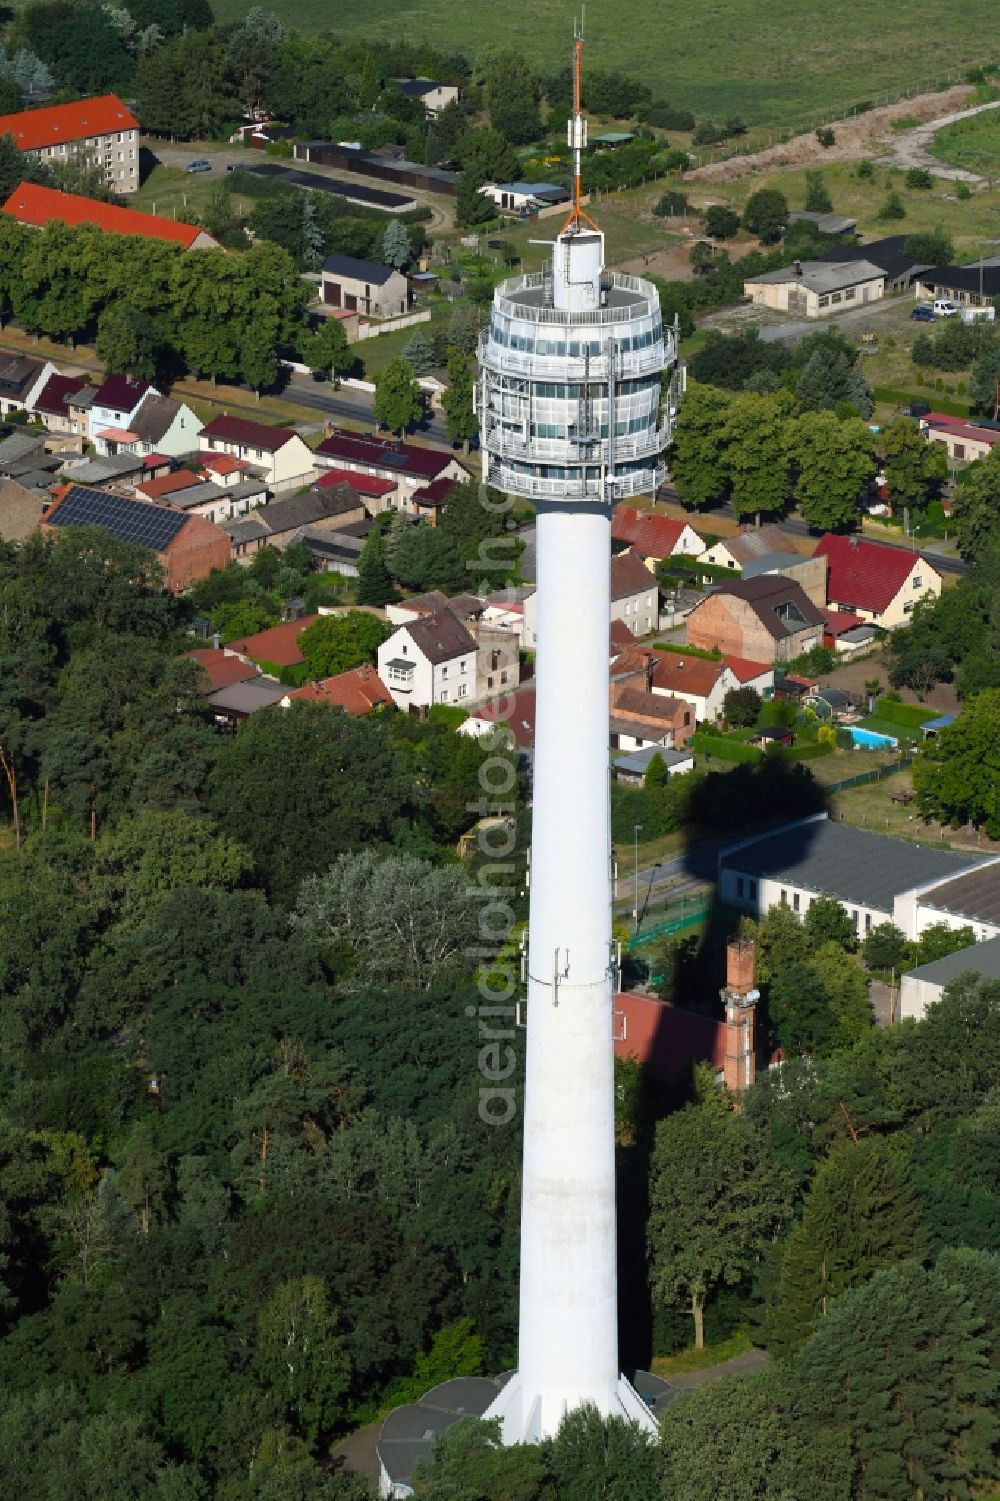 Aerial image Schönwalde-Glien - Television Tower Fernmeldeturm Perwenitz in Schoenwalde-Glien in the state Brandenburg, Germany